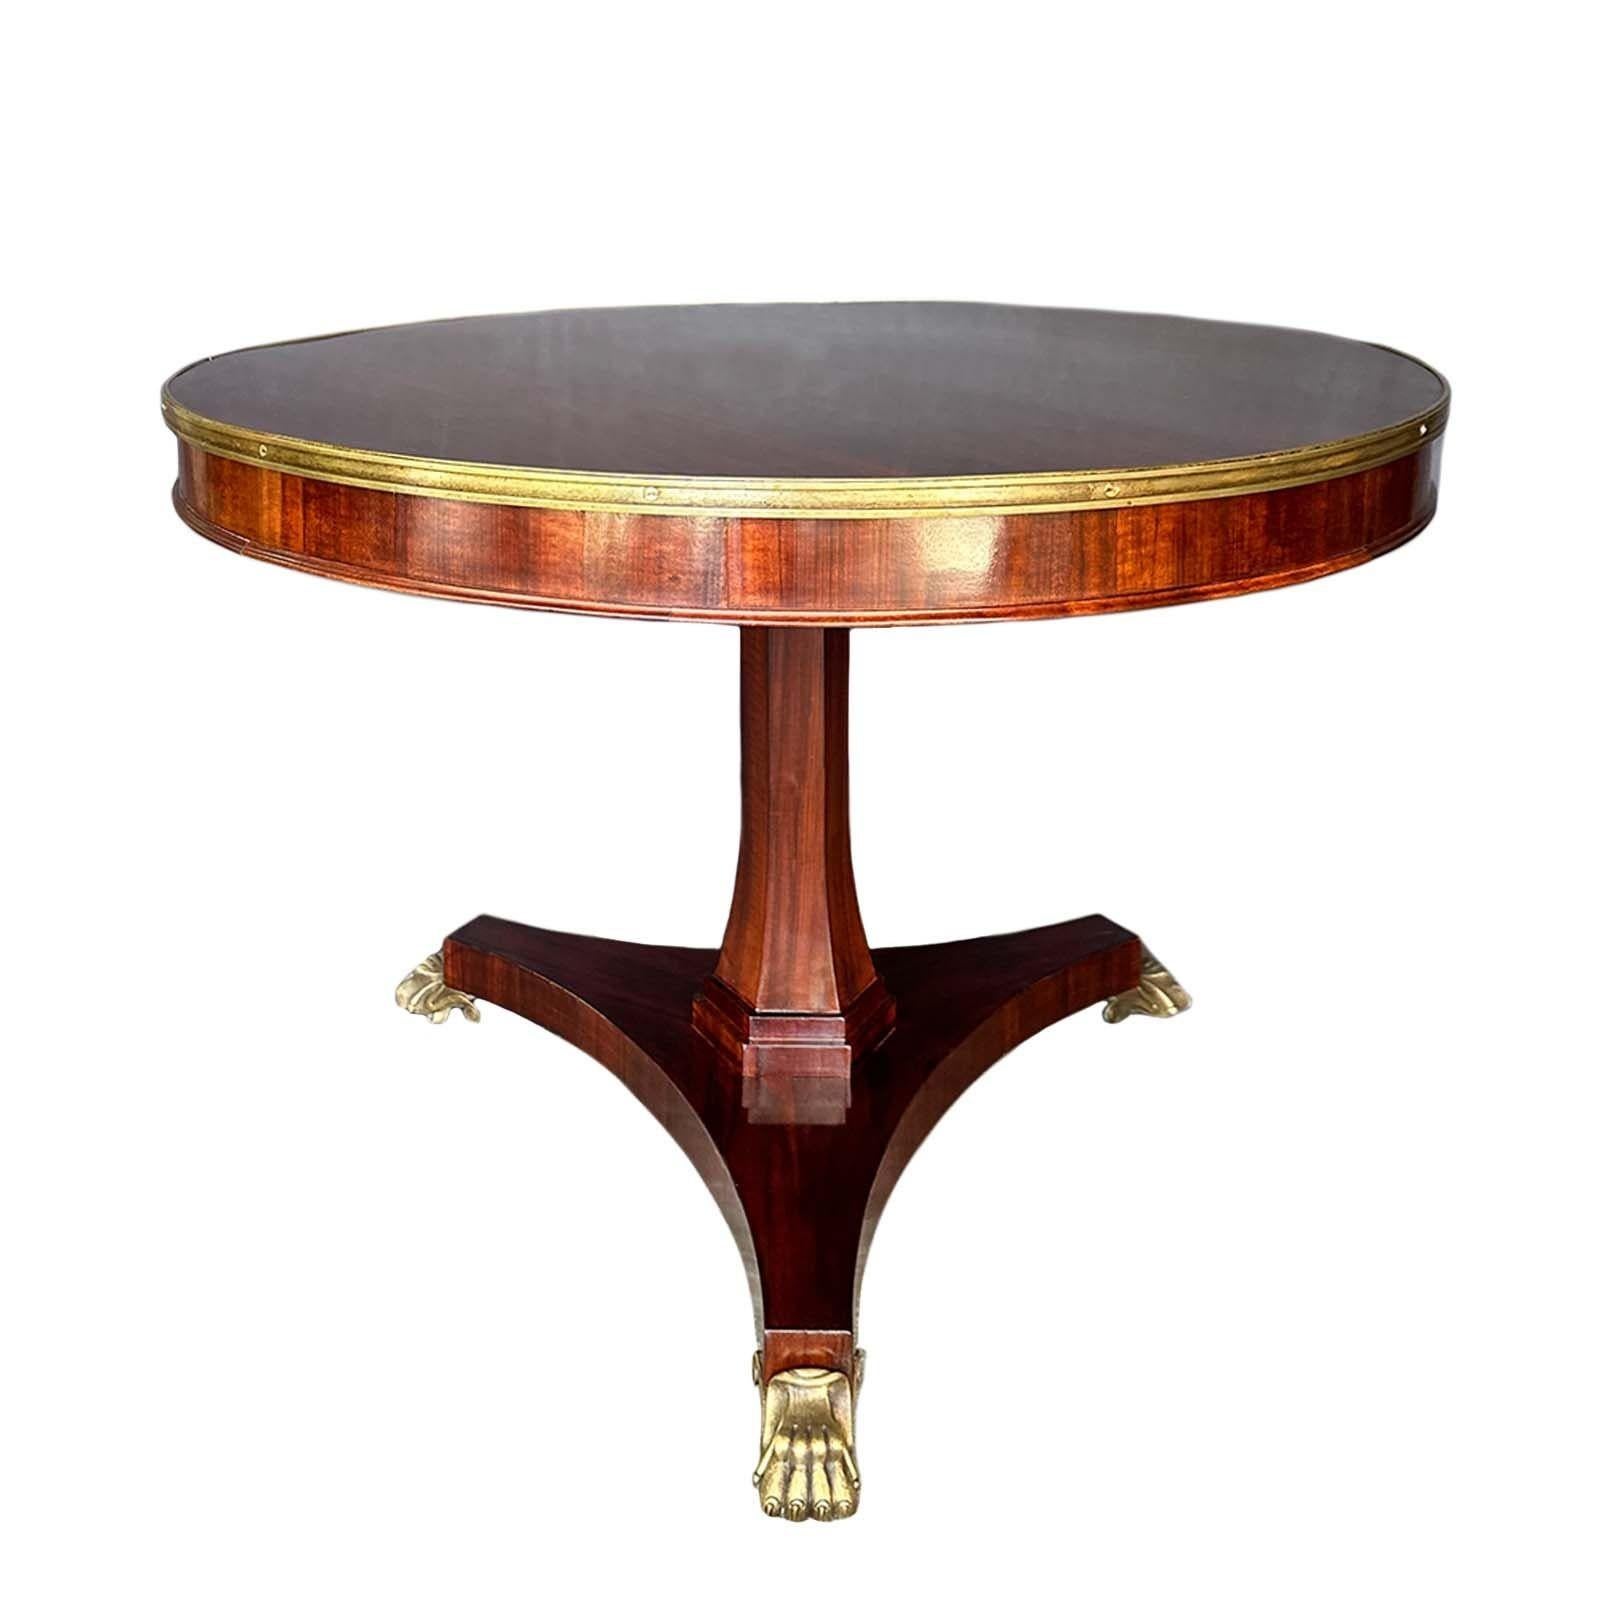 Étonnante table centrale en bois de rose de style Régence anglaise du 19e siècle à plateau basculant. L'opulence de la table est accentuée par ses montures en bronze méticuleuses, ajoutant une touche d'élégance intemporelle à tout espace. Soutenue